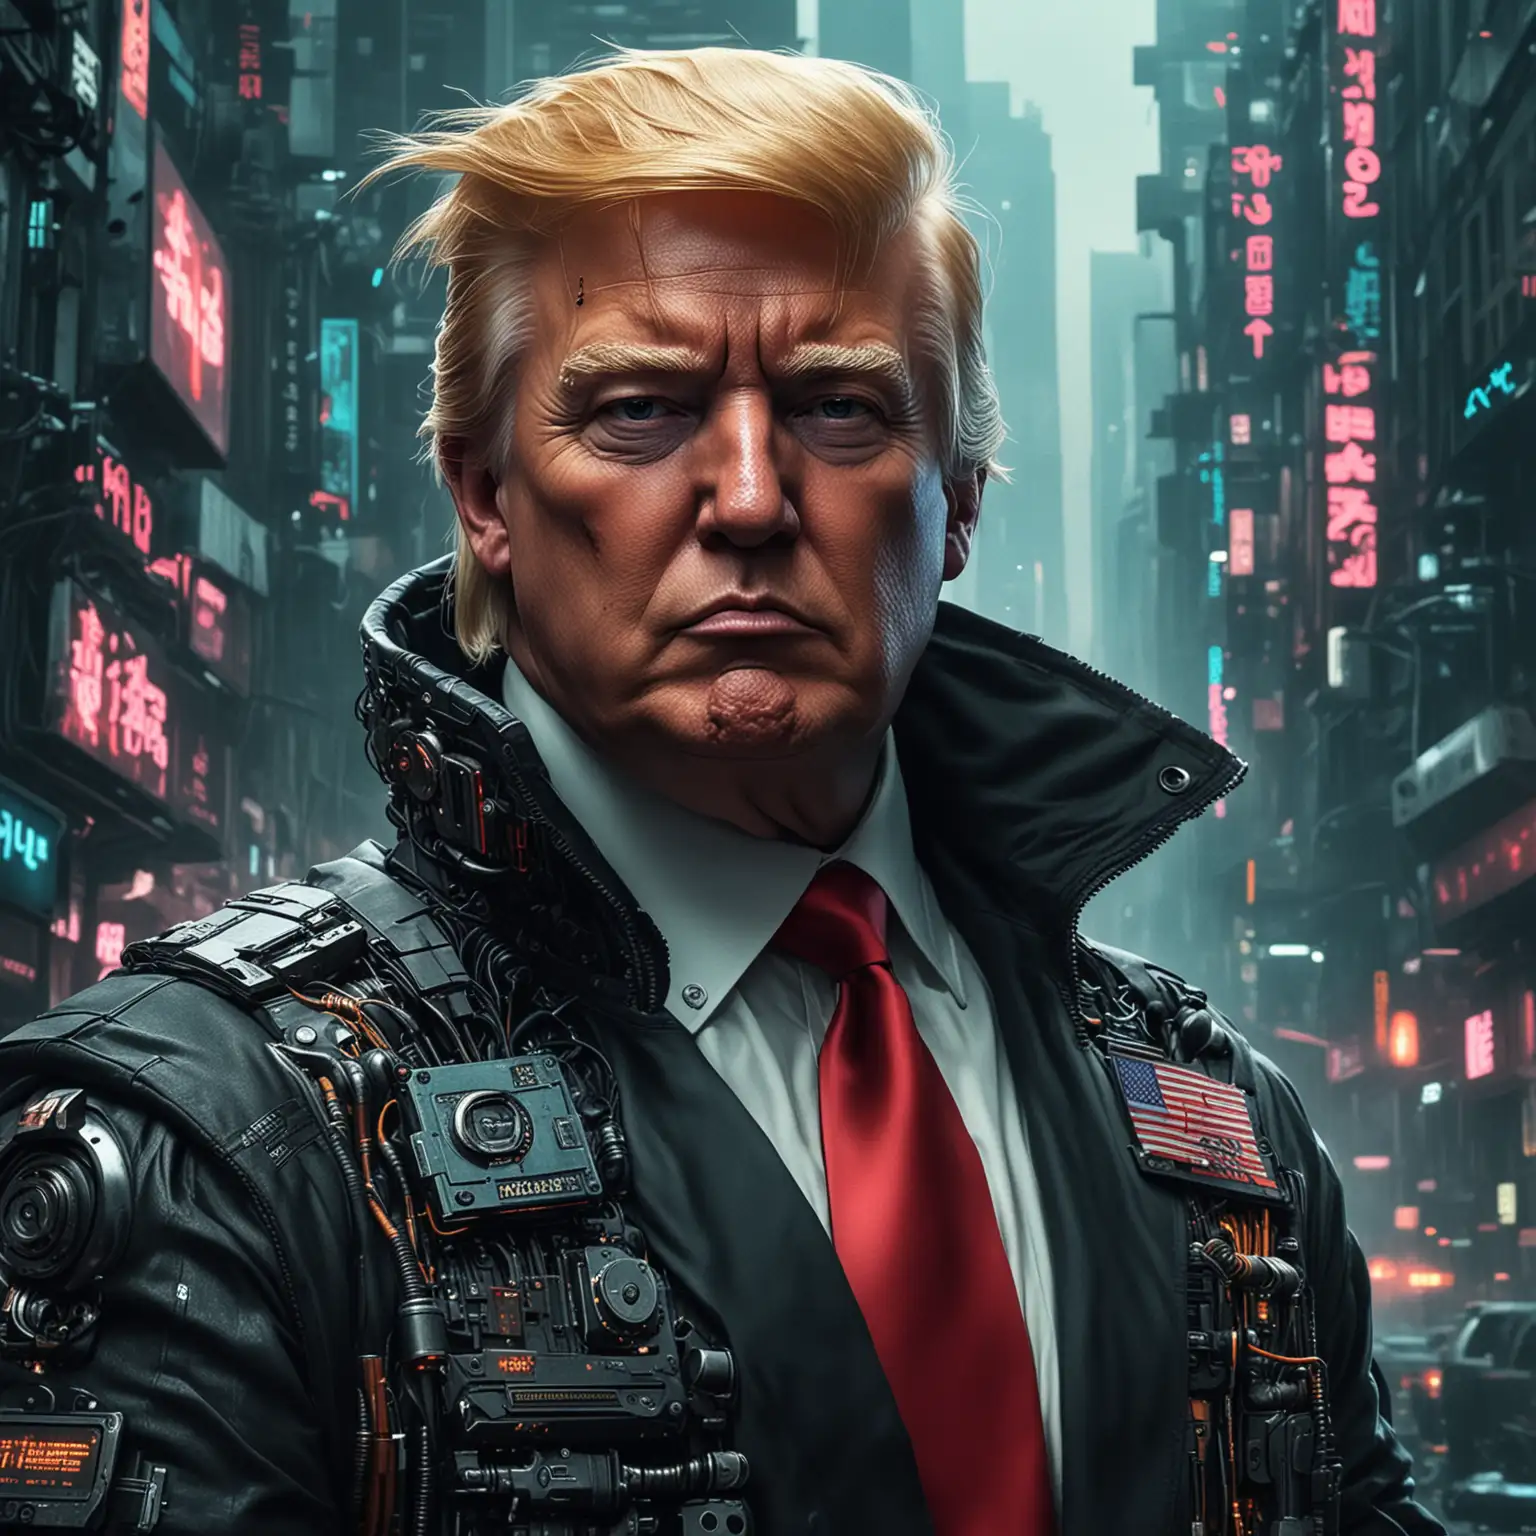 Donald-Trump-Cyberpunk-Portrait-Futuristic-Leader-with-Neon-Accents